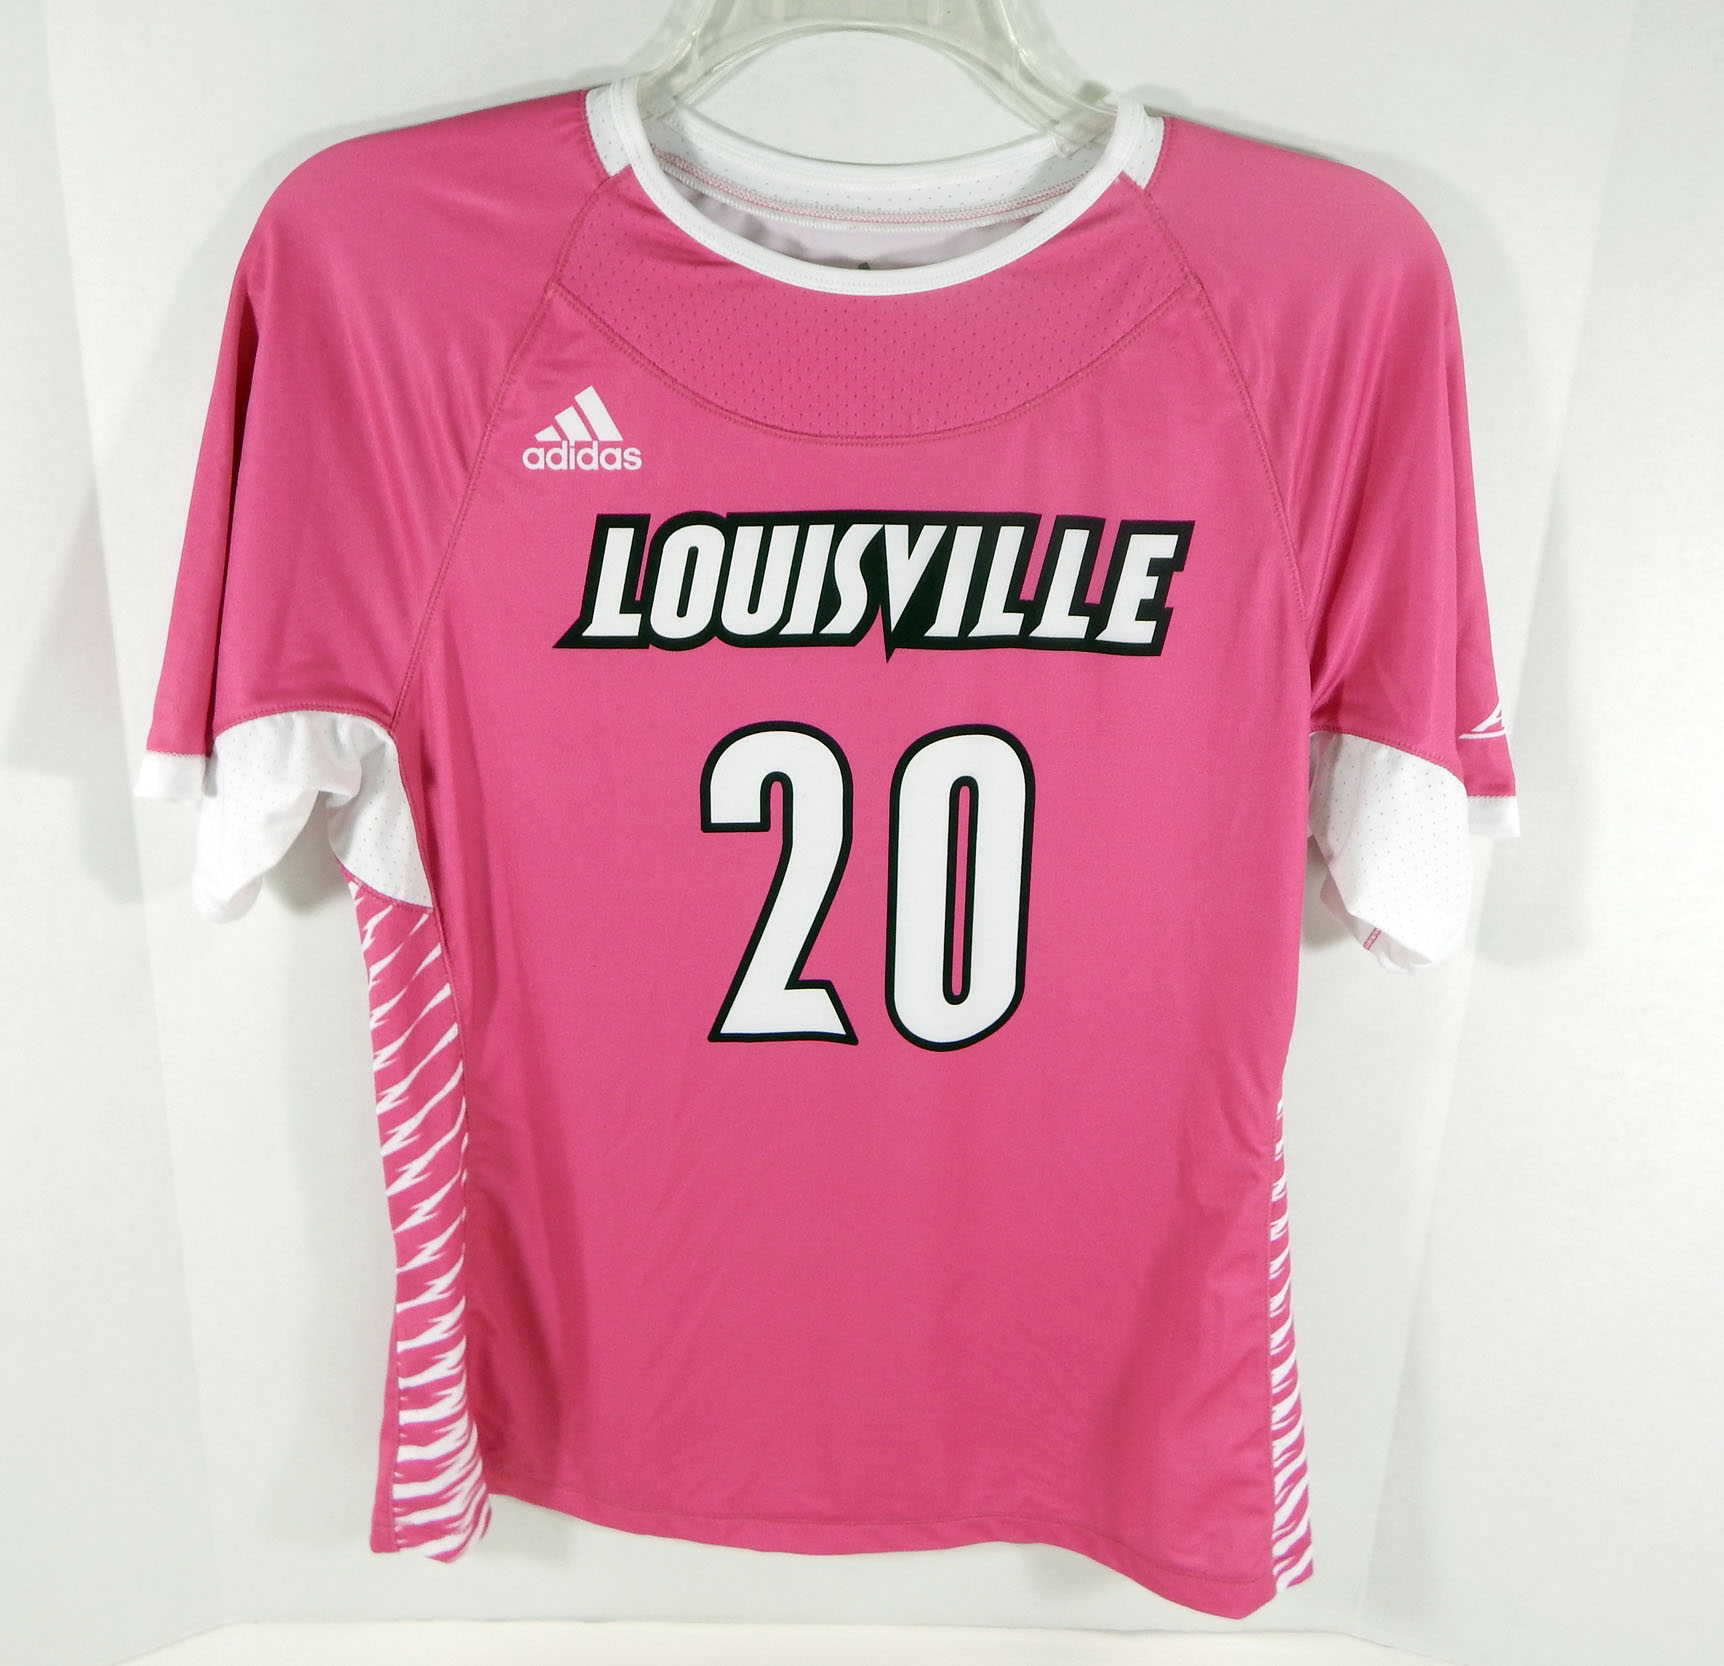 louisville cardinals shirt pink